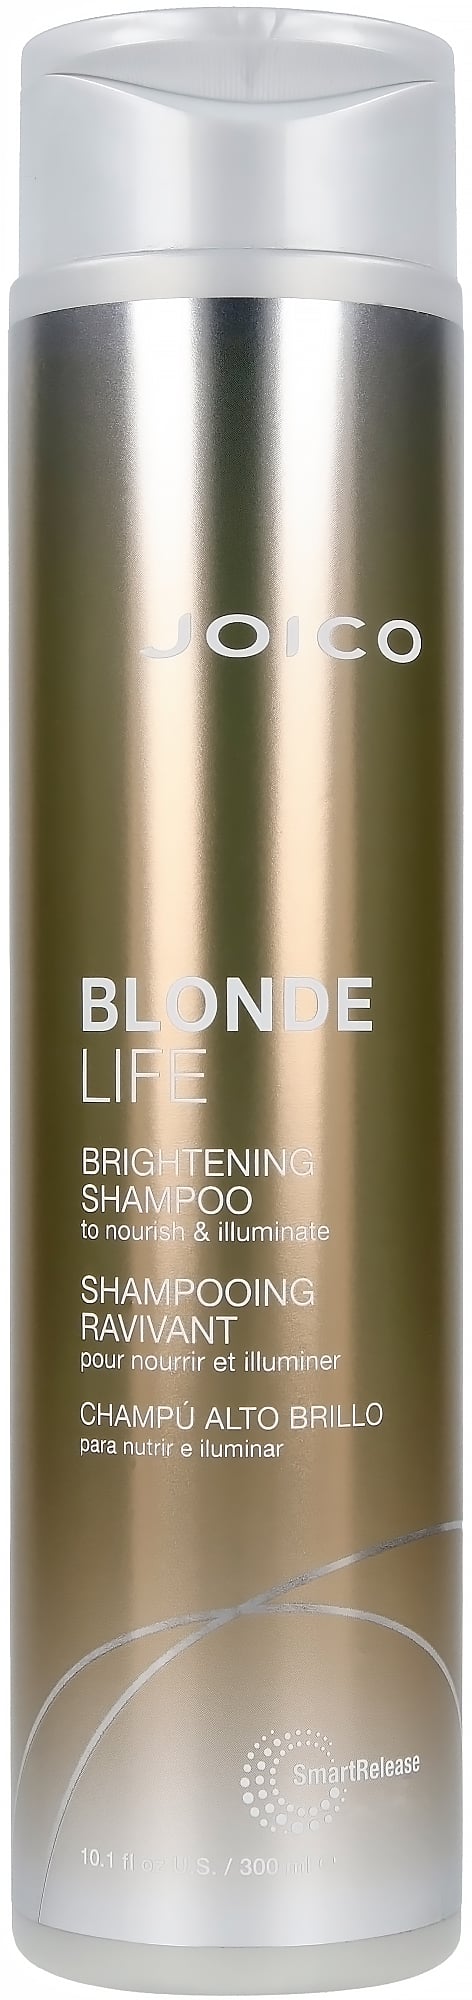 Joico - Blonde Life Brightening Shampoo 300 ml - Skjønnhet